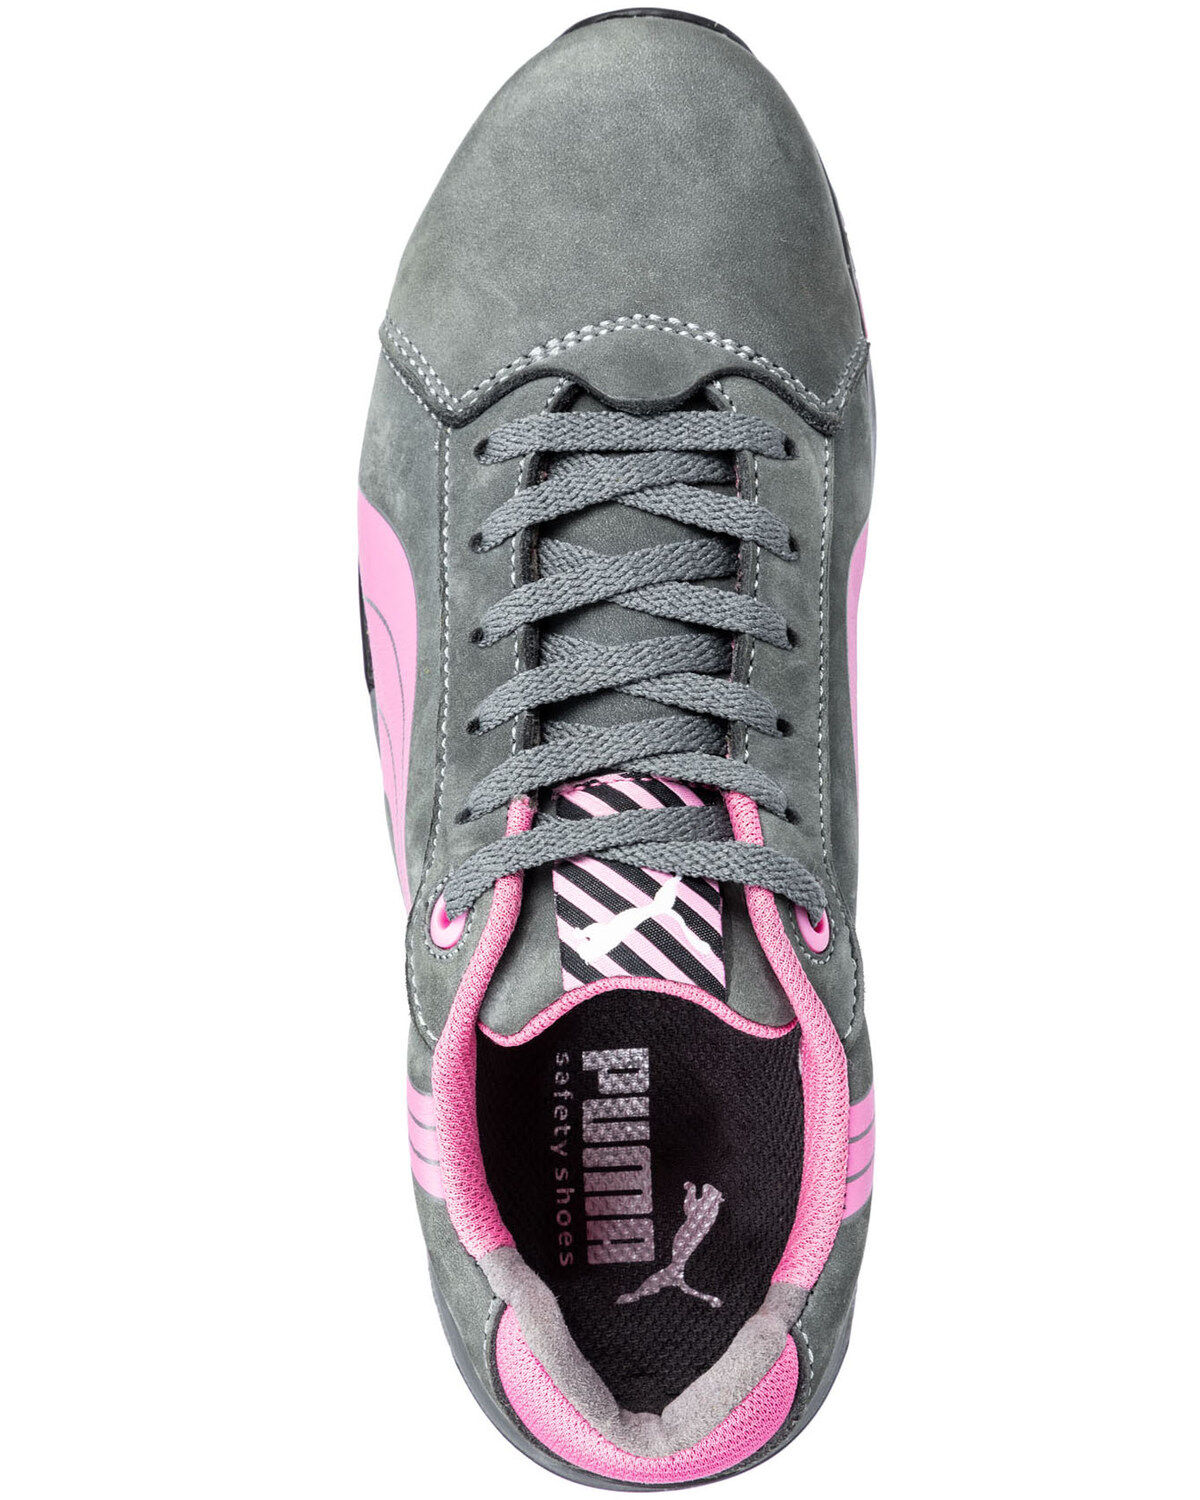 women's puma steel toe tennis shoes